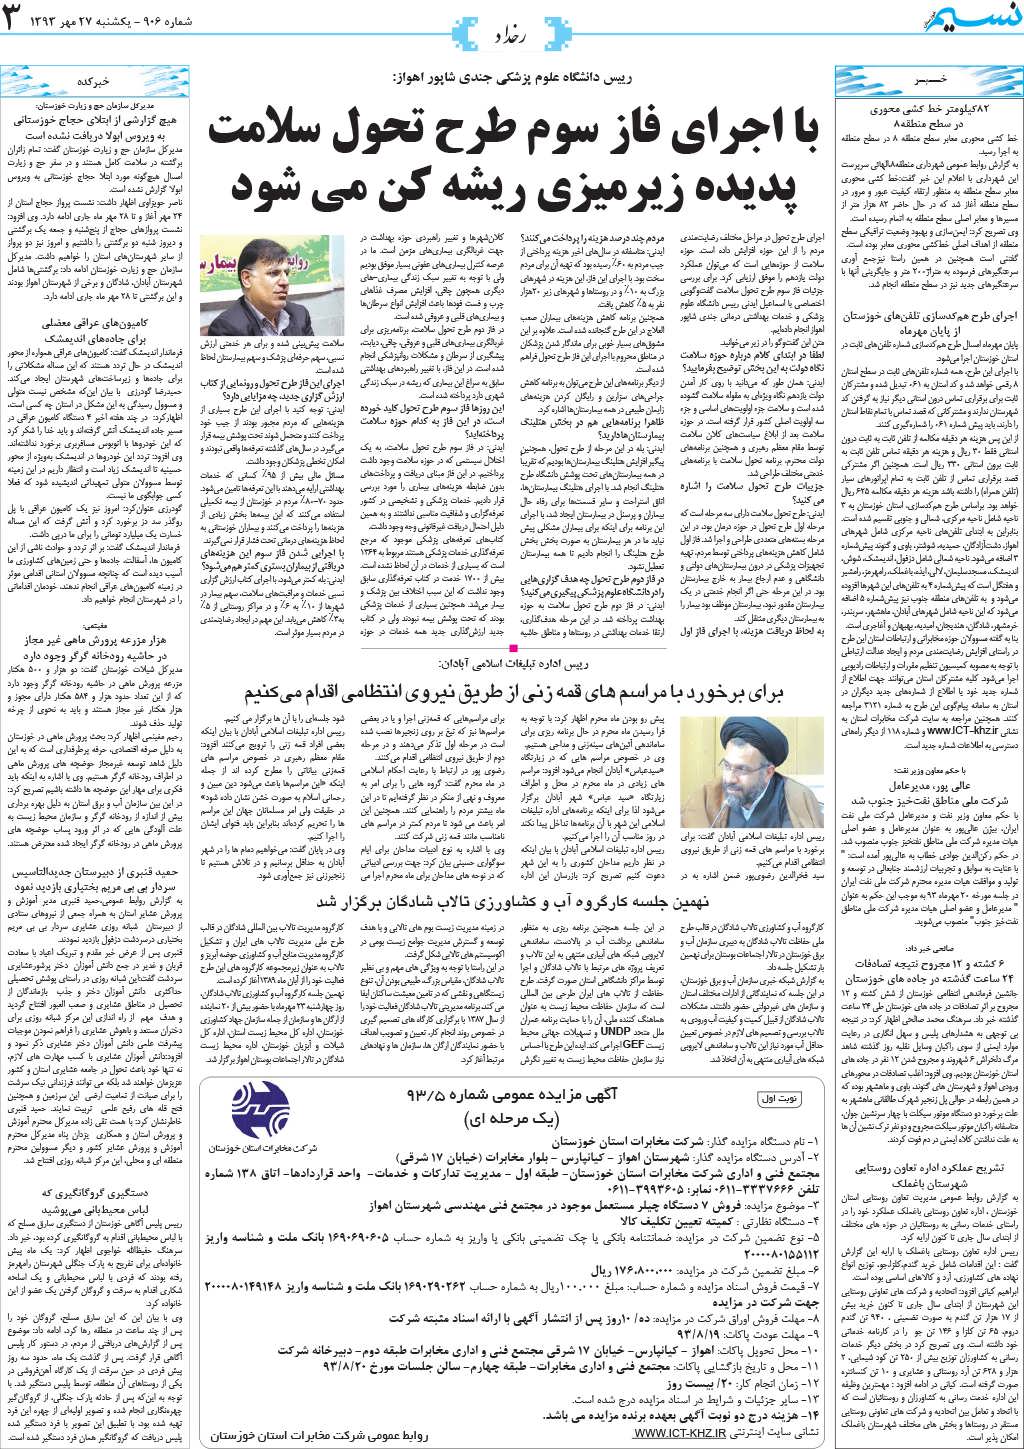 صفحه رخداد روزنامه نسیم خوزستان شماره ۹۰۶